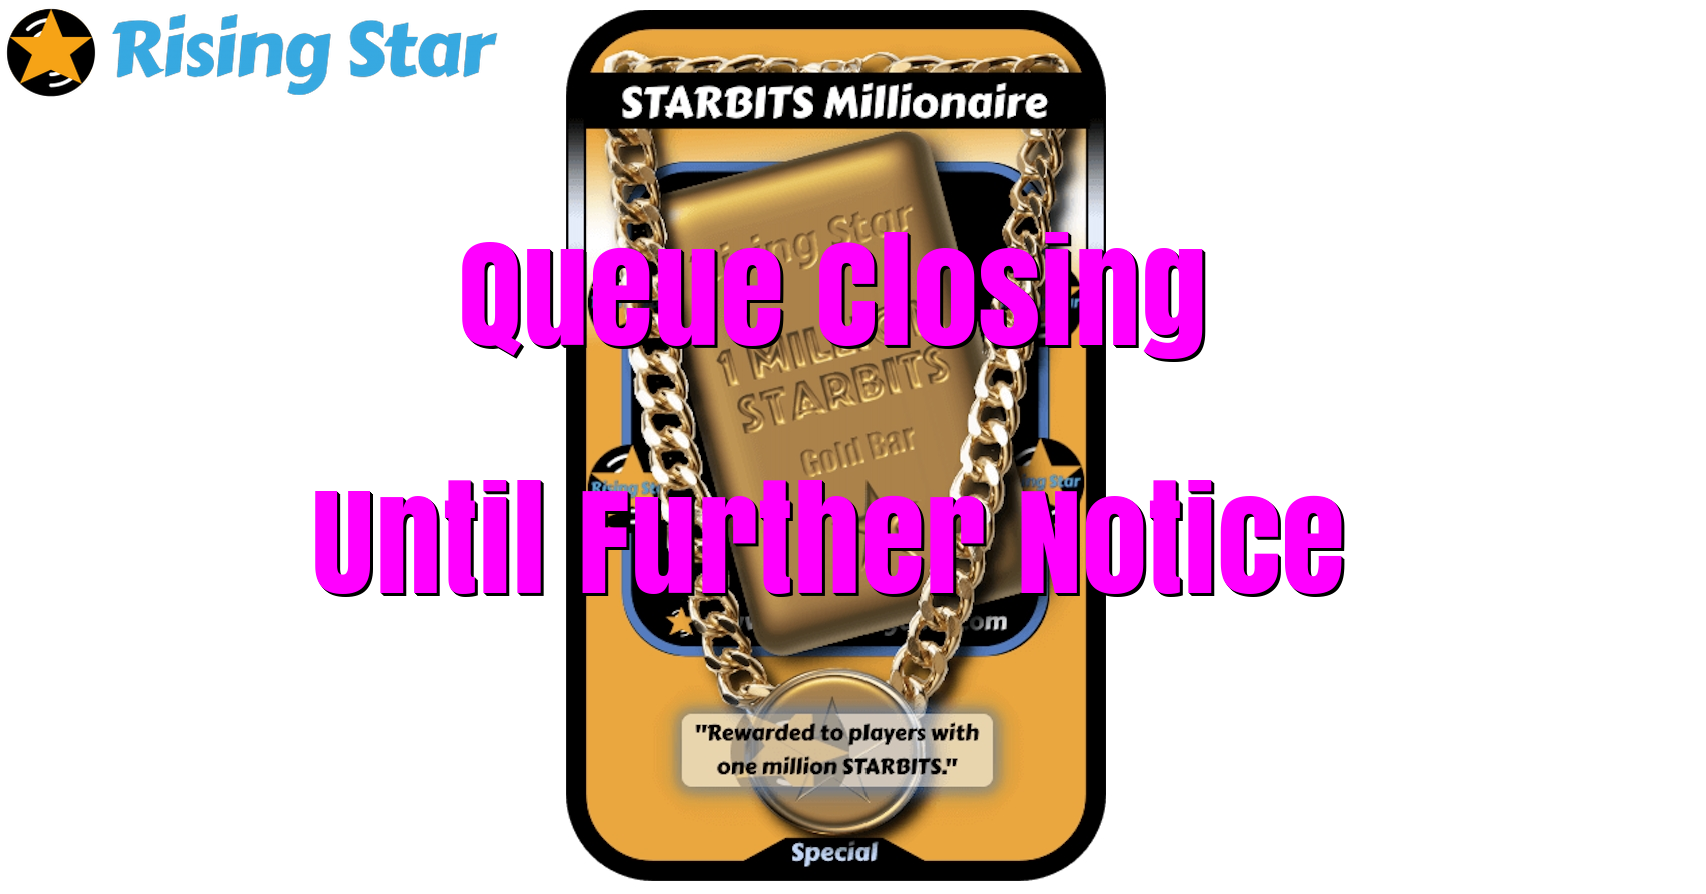 @risingstargame/starbits-millionaire-queue-closing-until-further-notice